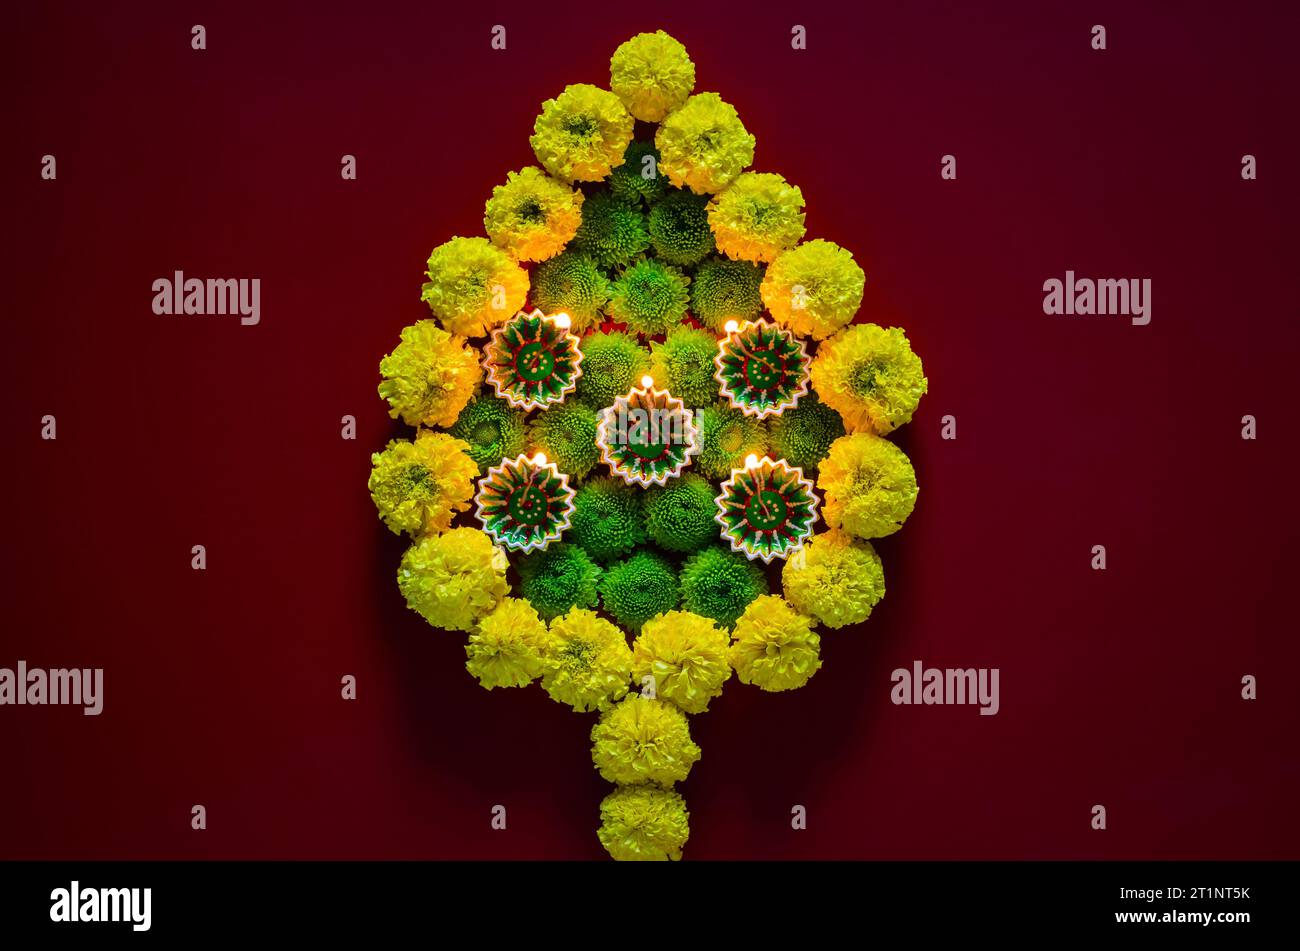 Lampade diya in argilla accese per celebrare il festival Diwali con fiori colorati a forma di fiamma su sfondo rosso scuro. Foto Stock